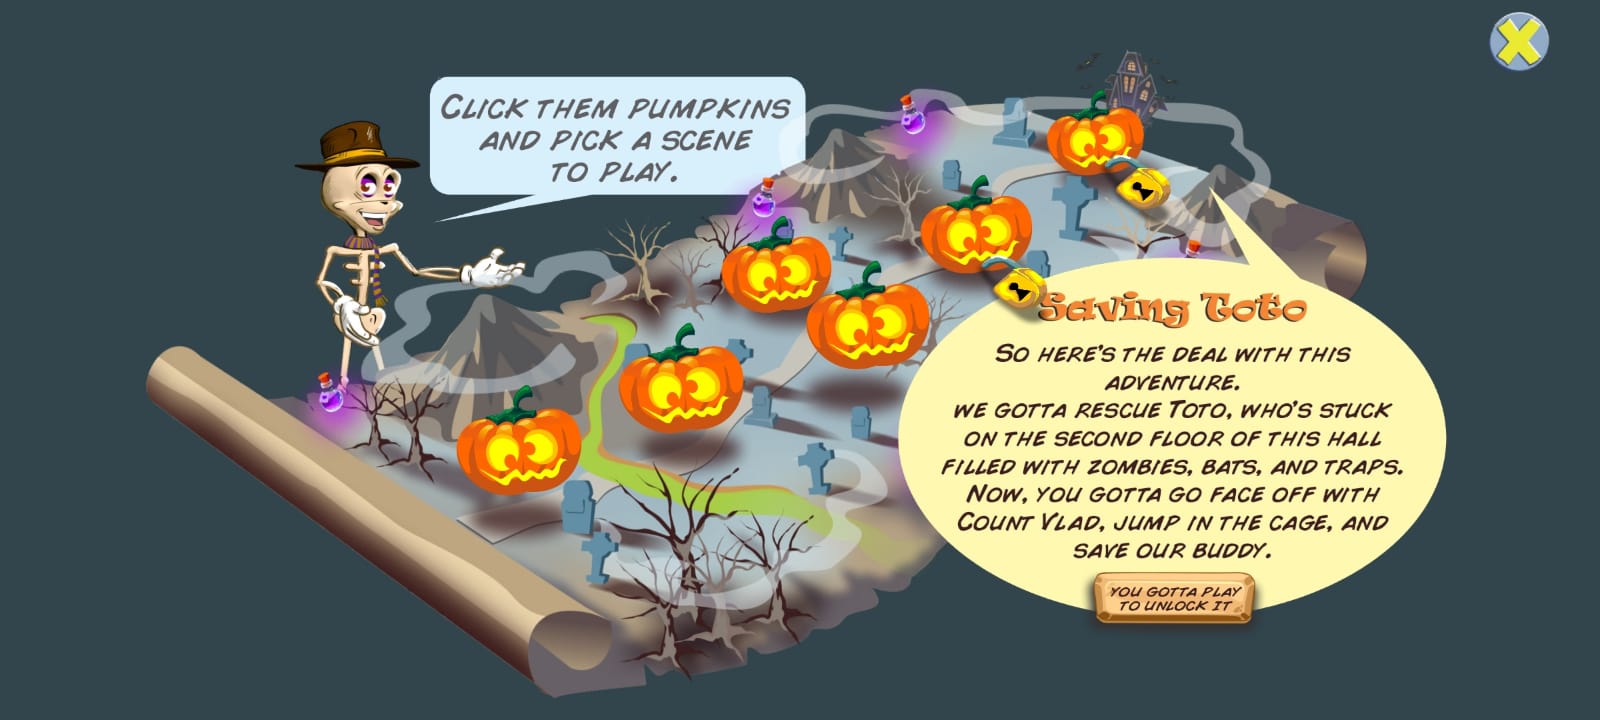 Download Pumpkins Quest für Android kostenlos.